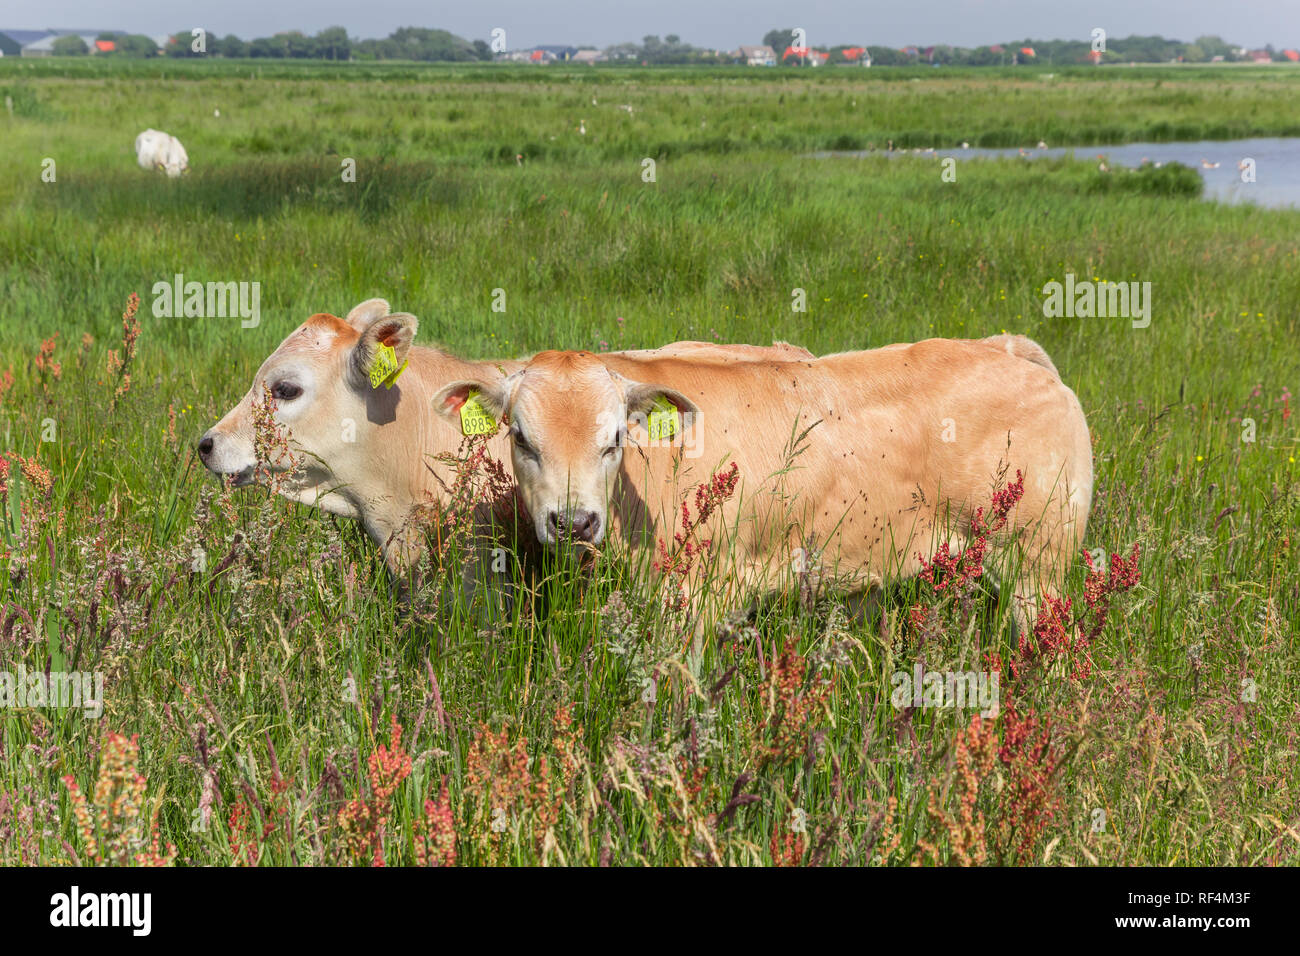 Deux Piemontese veaux dans le paysage de l'île de Texel, Pays-Bas Banque D'Images